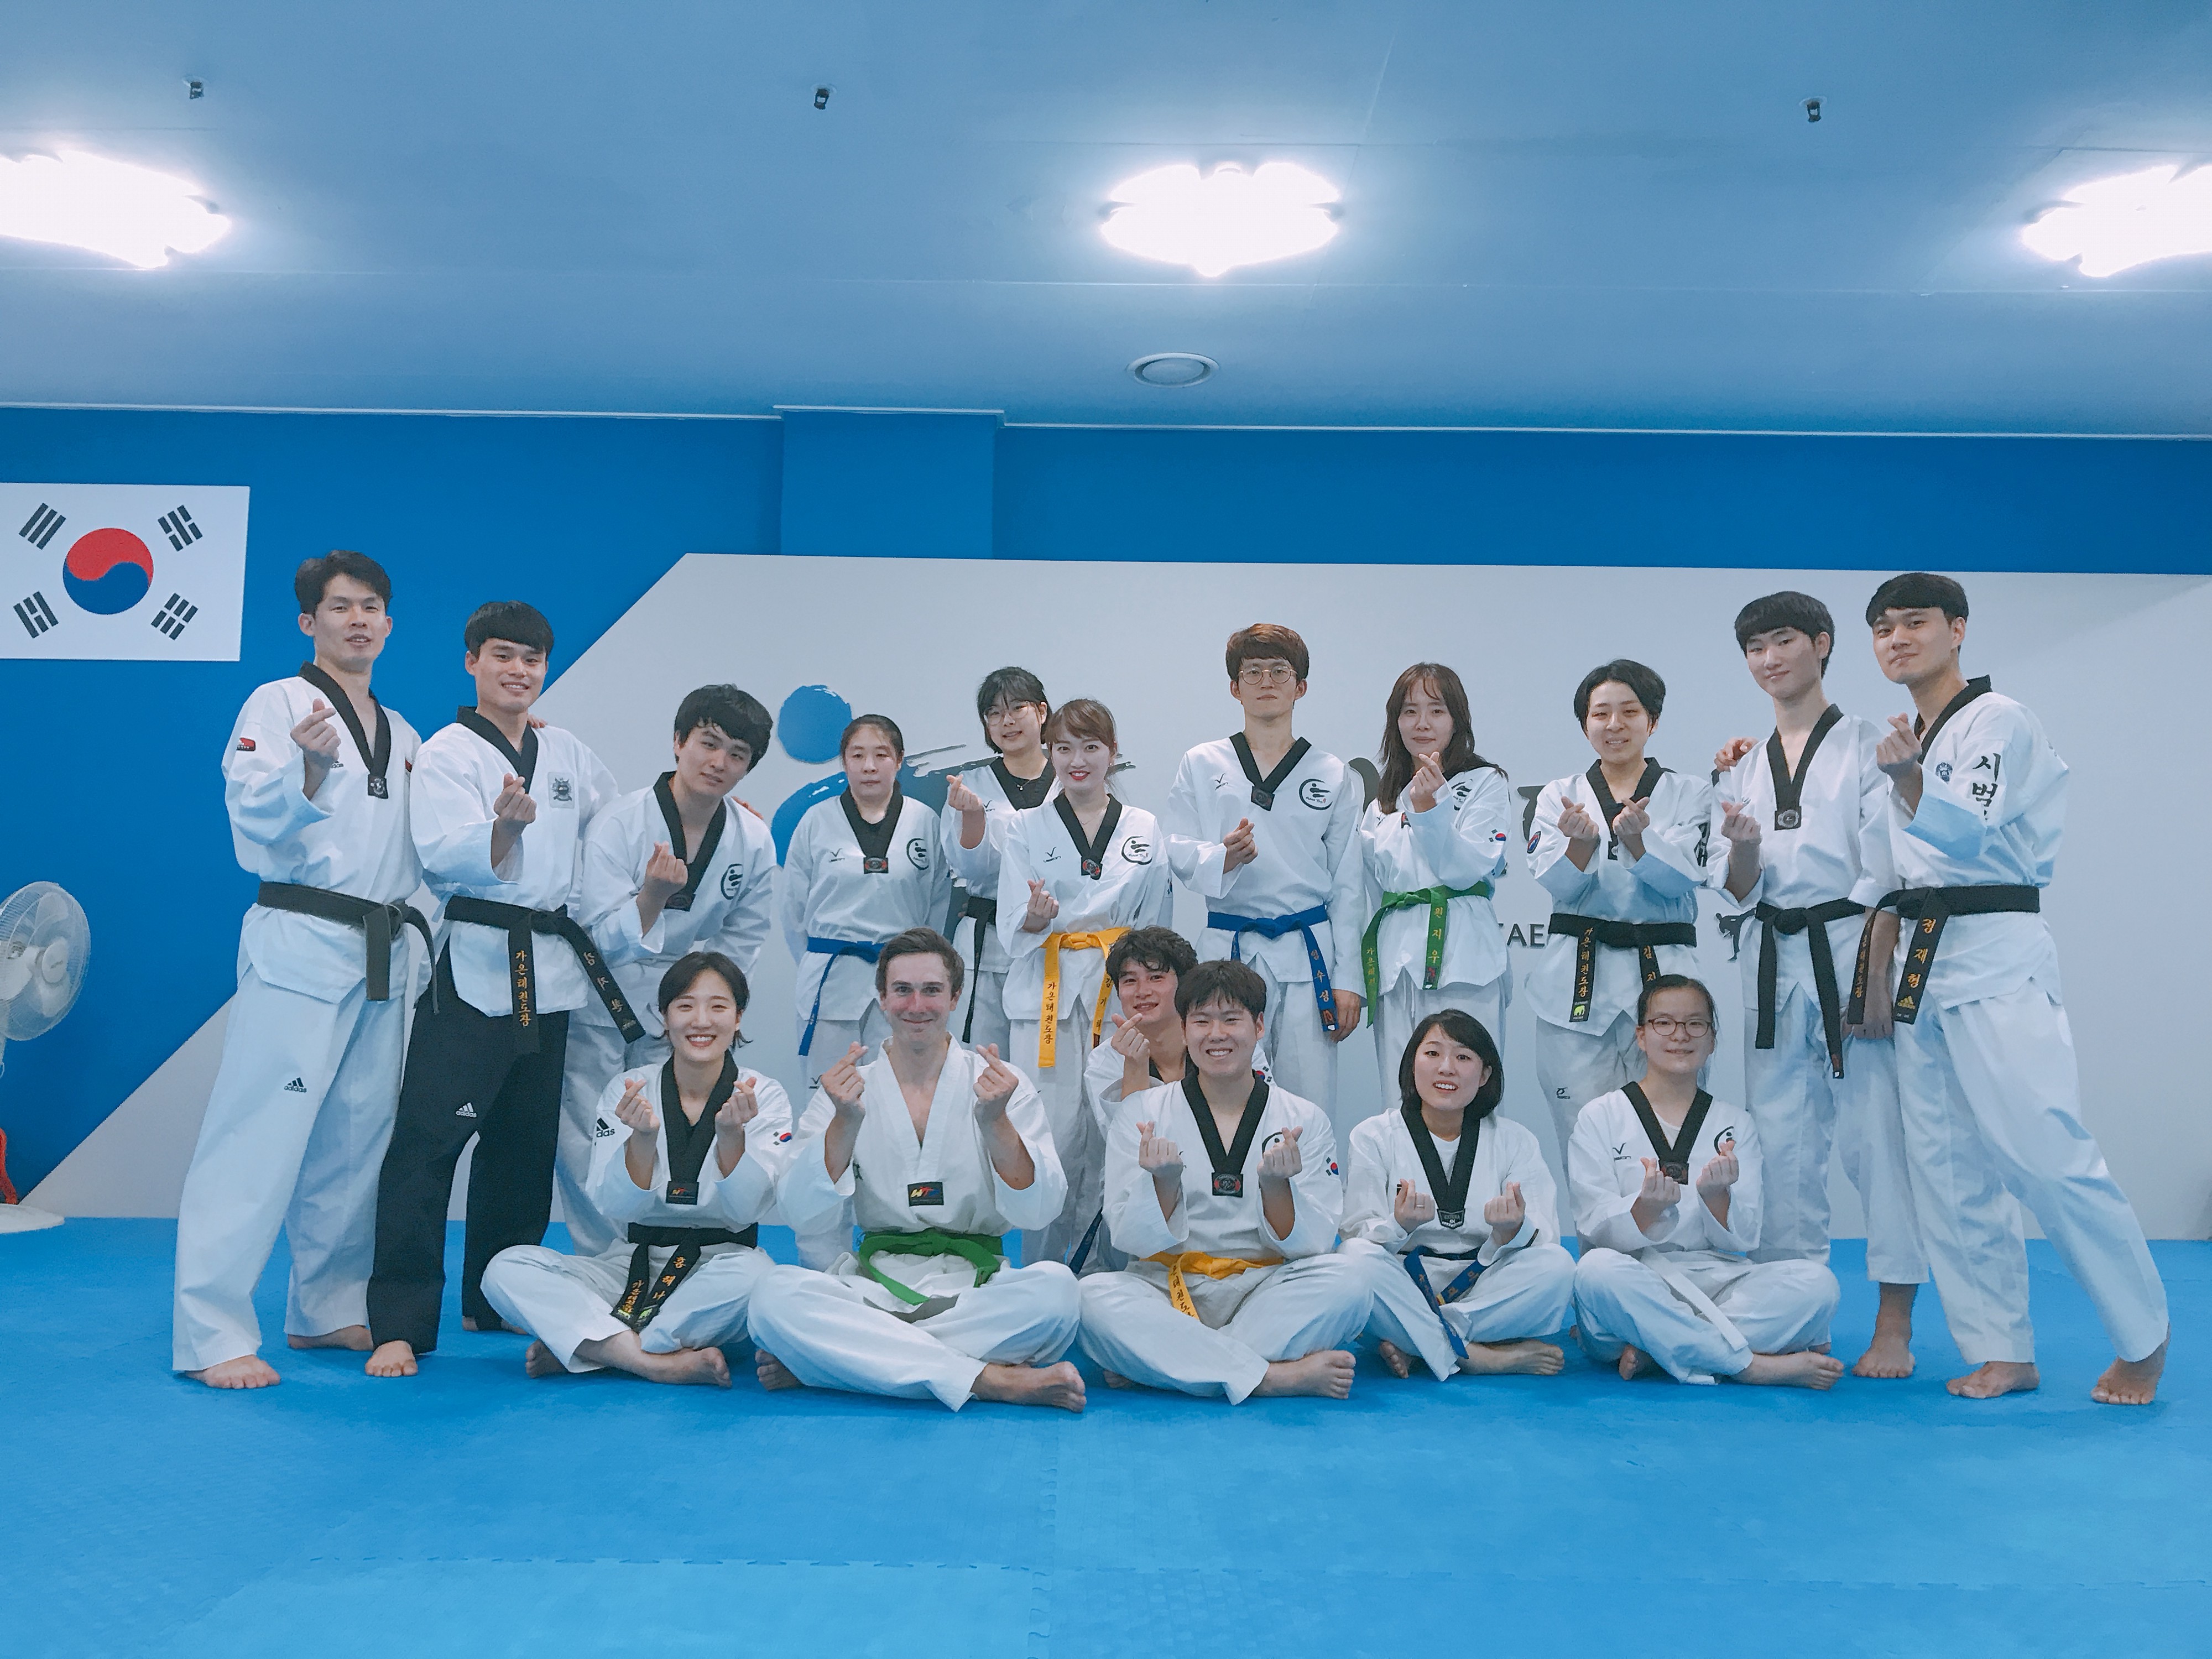 Group picture at Gaon dojang